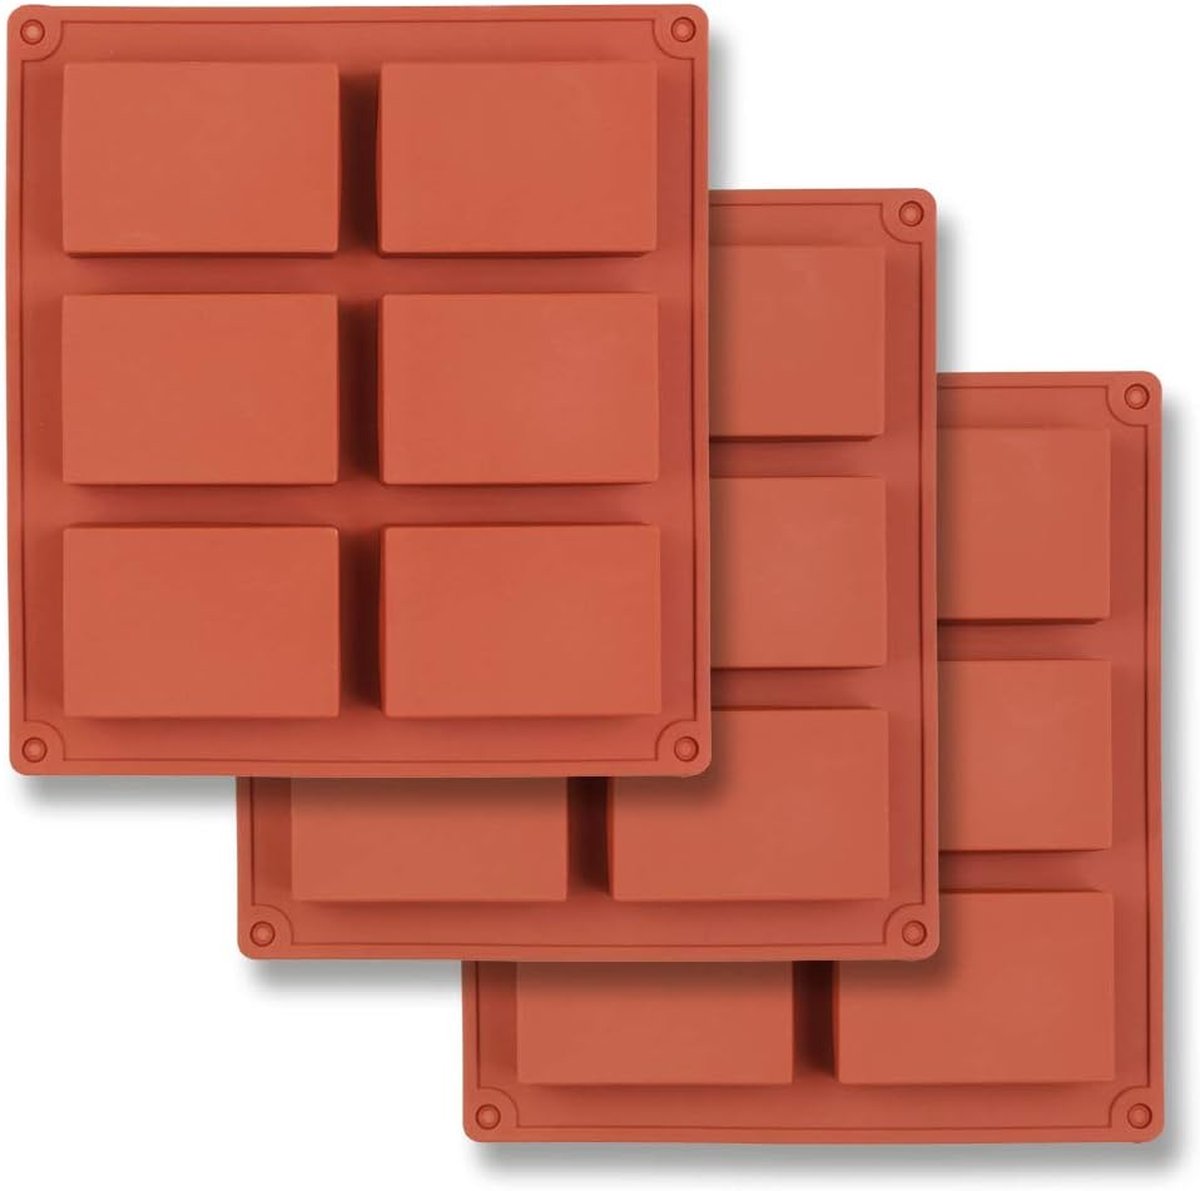 Rechthoekige siliconen mal met 6 compartimenten, set van 3 rechthoekige mallen voor het maken van zeeprepen, hars, chocolade, zeepkaarsen en geleibruin